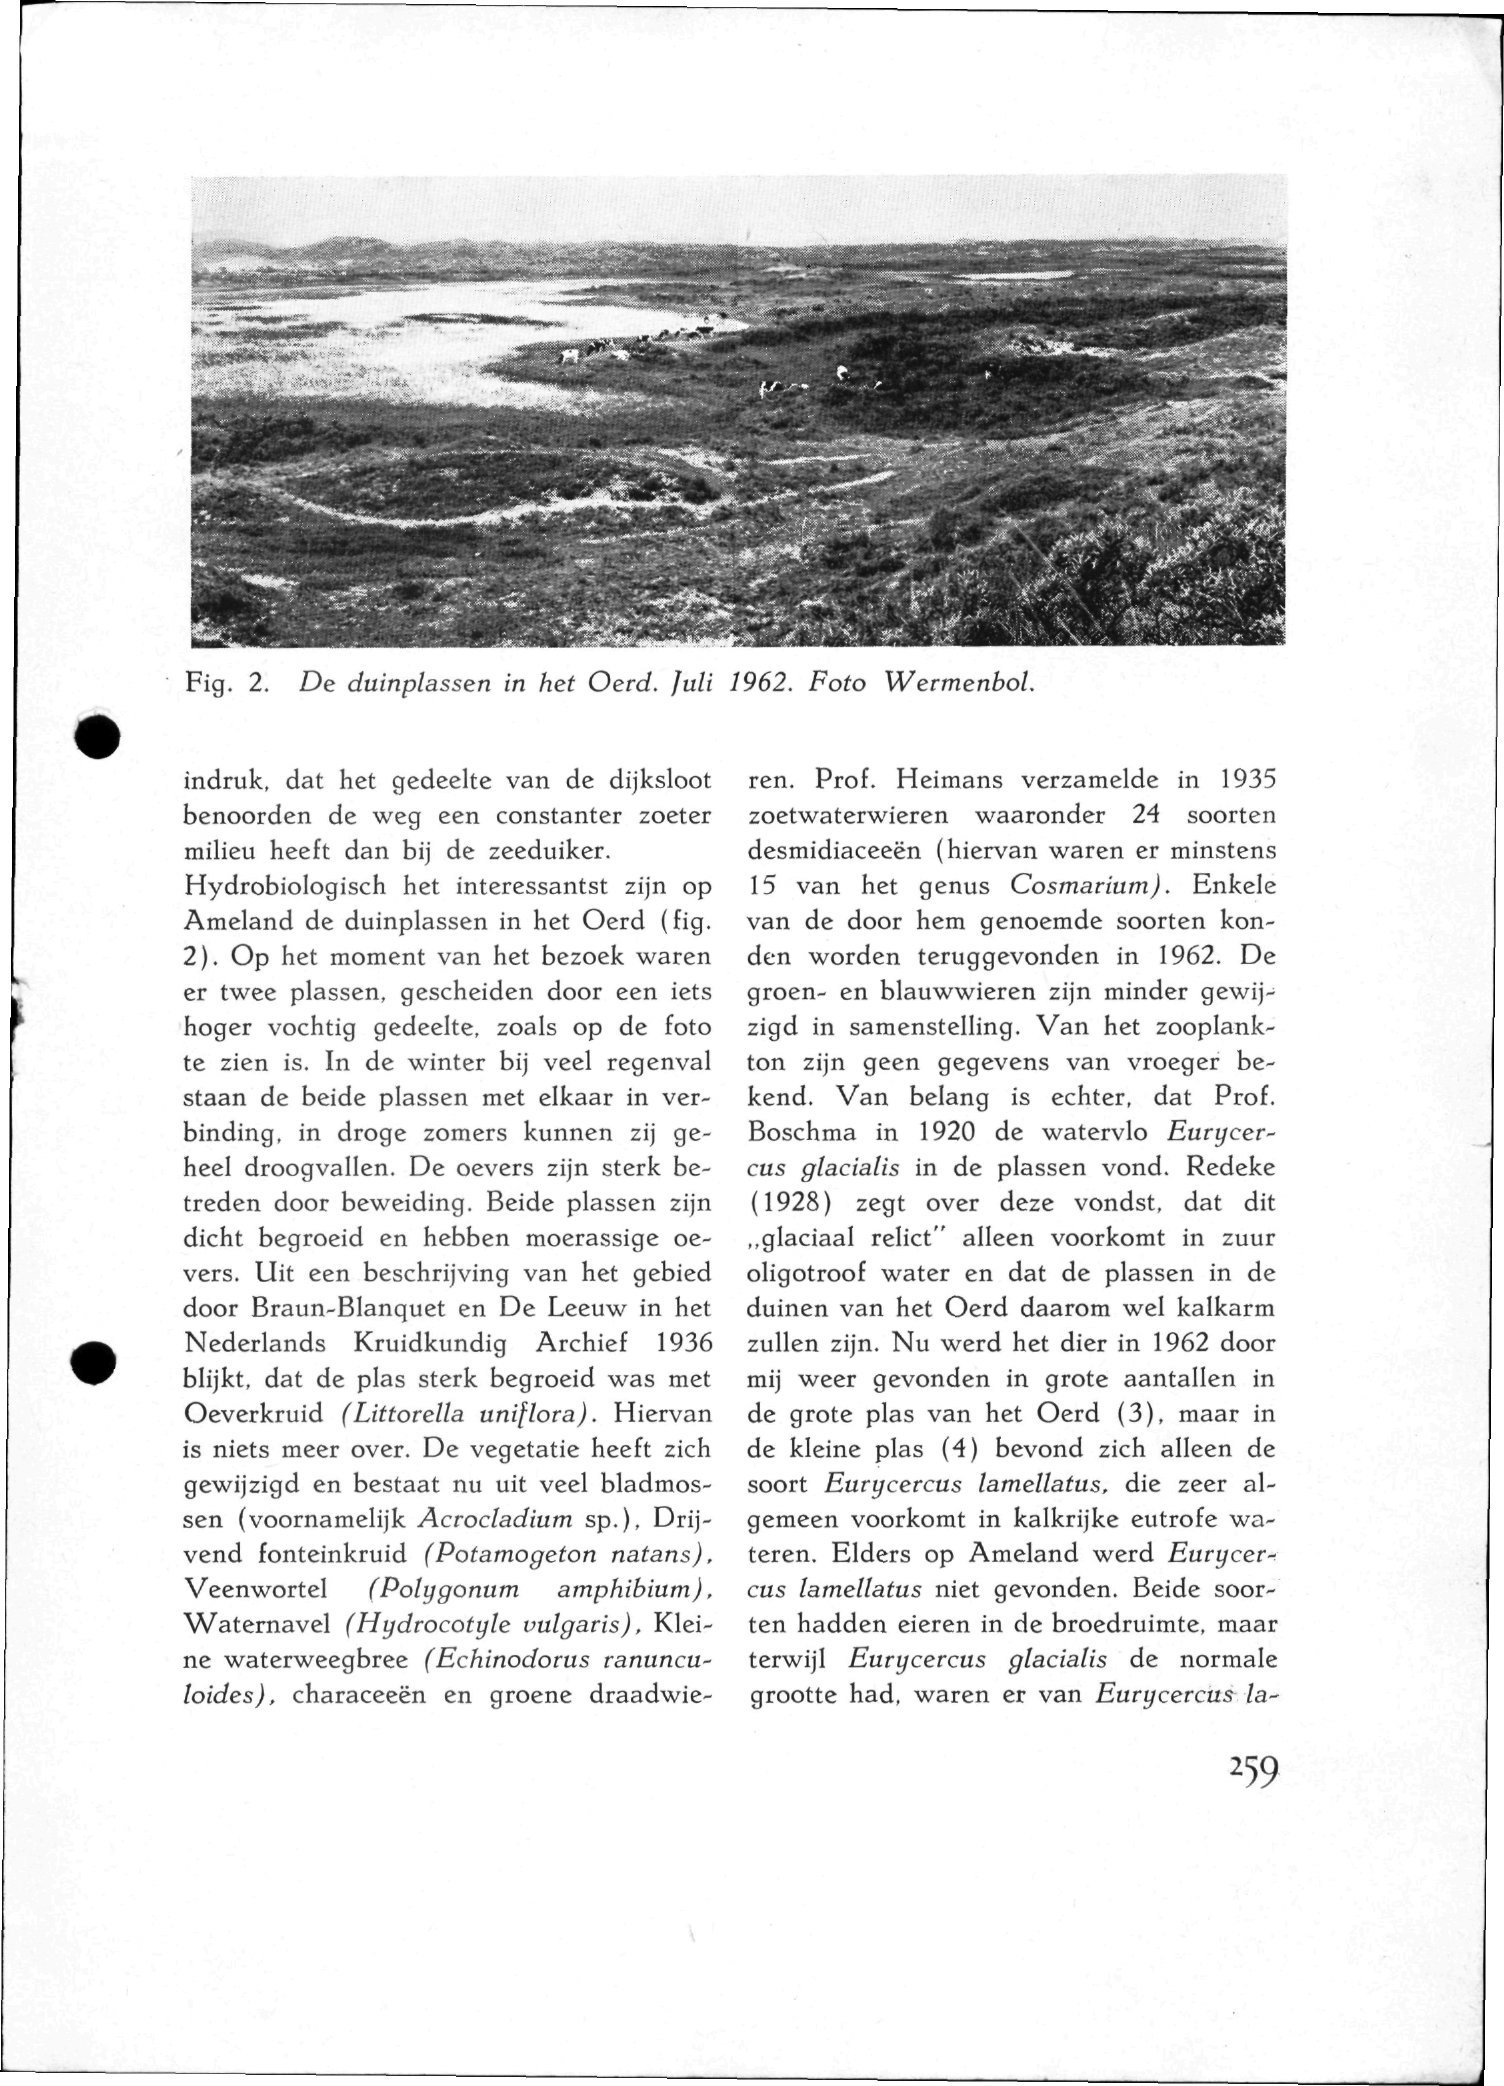 Fig.. De duinpiassen in het Oerd. Juli 96. Foto Wermenbol. indruk, dat het gedeelte van de dijksloot benoorden de weg een constanter zoeter milieu heeft dan bij de zeeduiker.